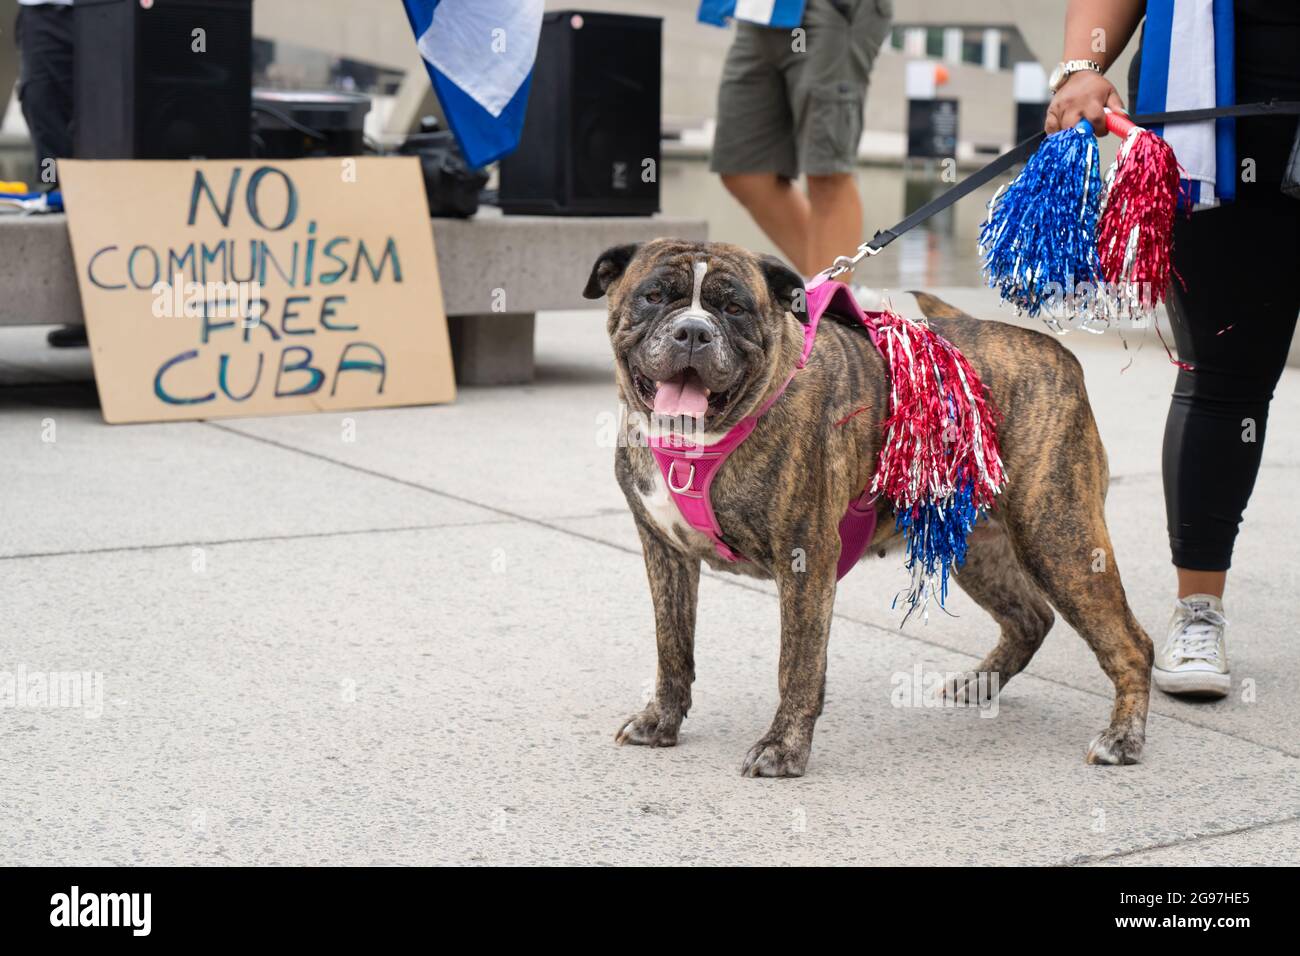 Un cane indossa i colori cubani in un evento a Toronto, in Canada, dove i cubani-canadesi condannarono il governo comunista cubano e chiesero la libertà. Foto Stock